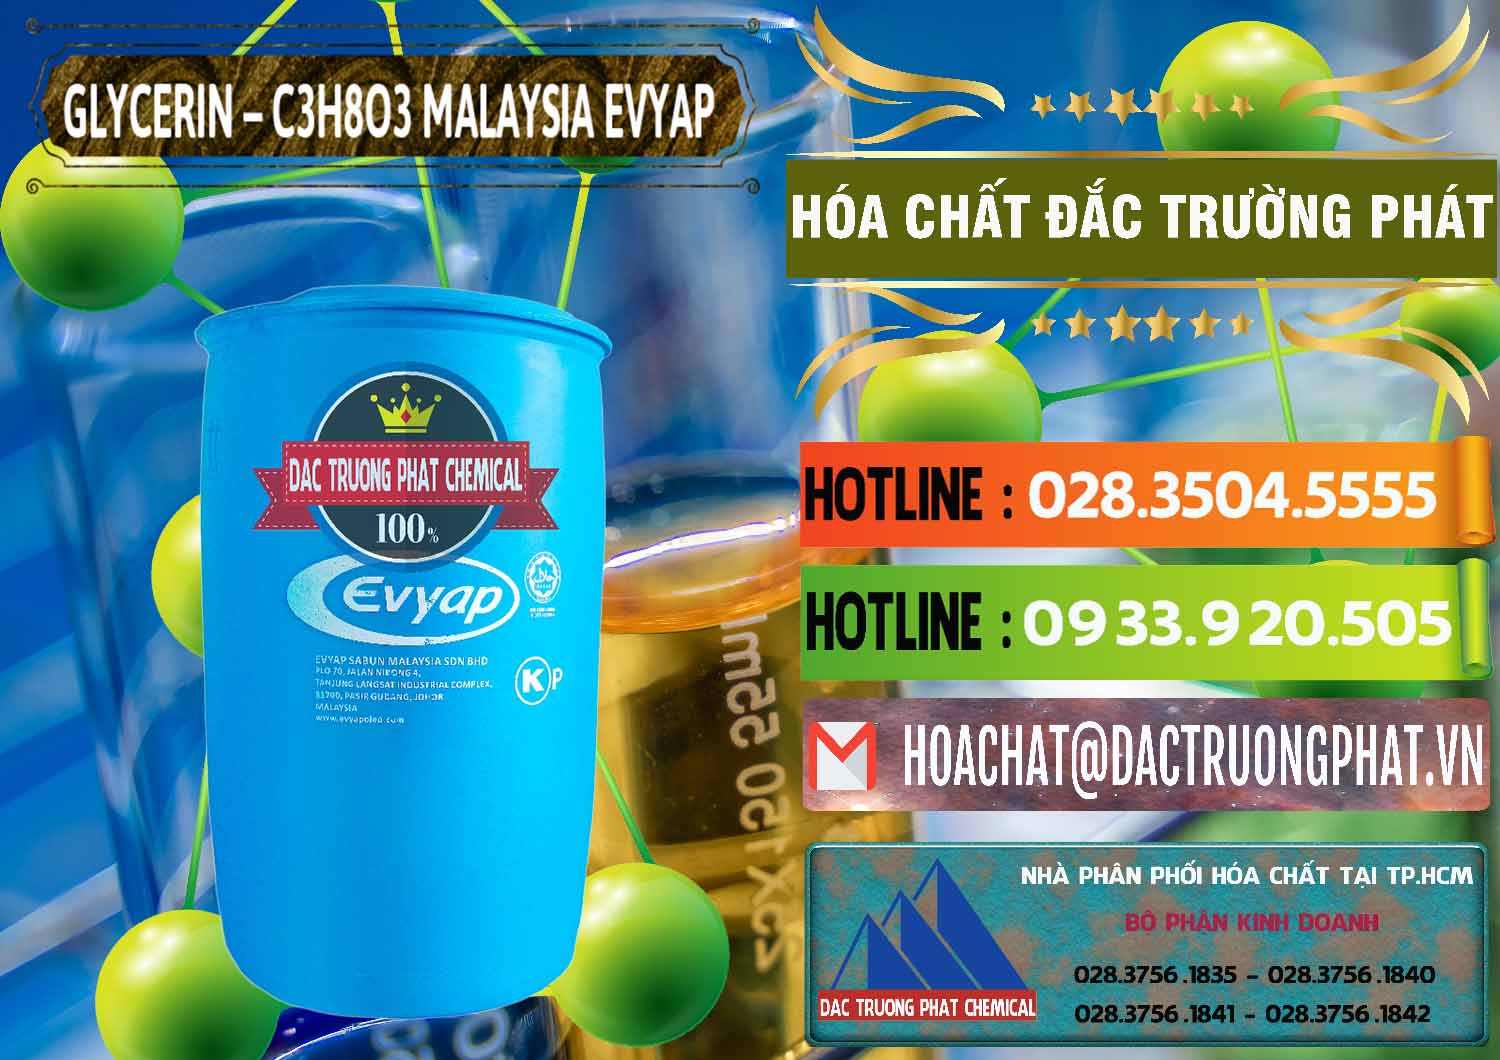 Nơi bán & cung cấp Glycerin – C3H8O3 Malaysia Evyap - 0066 - Nhà phân phối và kinh doanh hóa chất tại TP.HCM - cungcaphoachat.com.vn